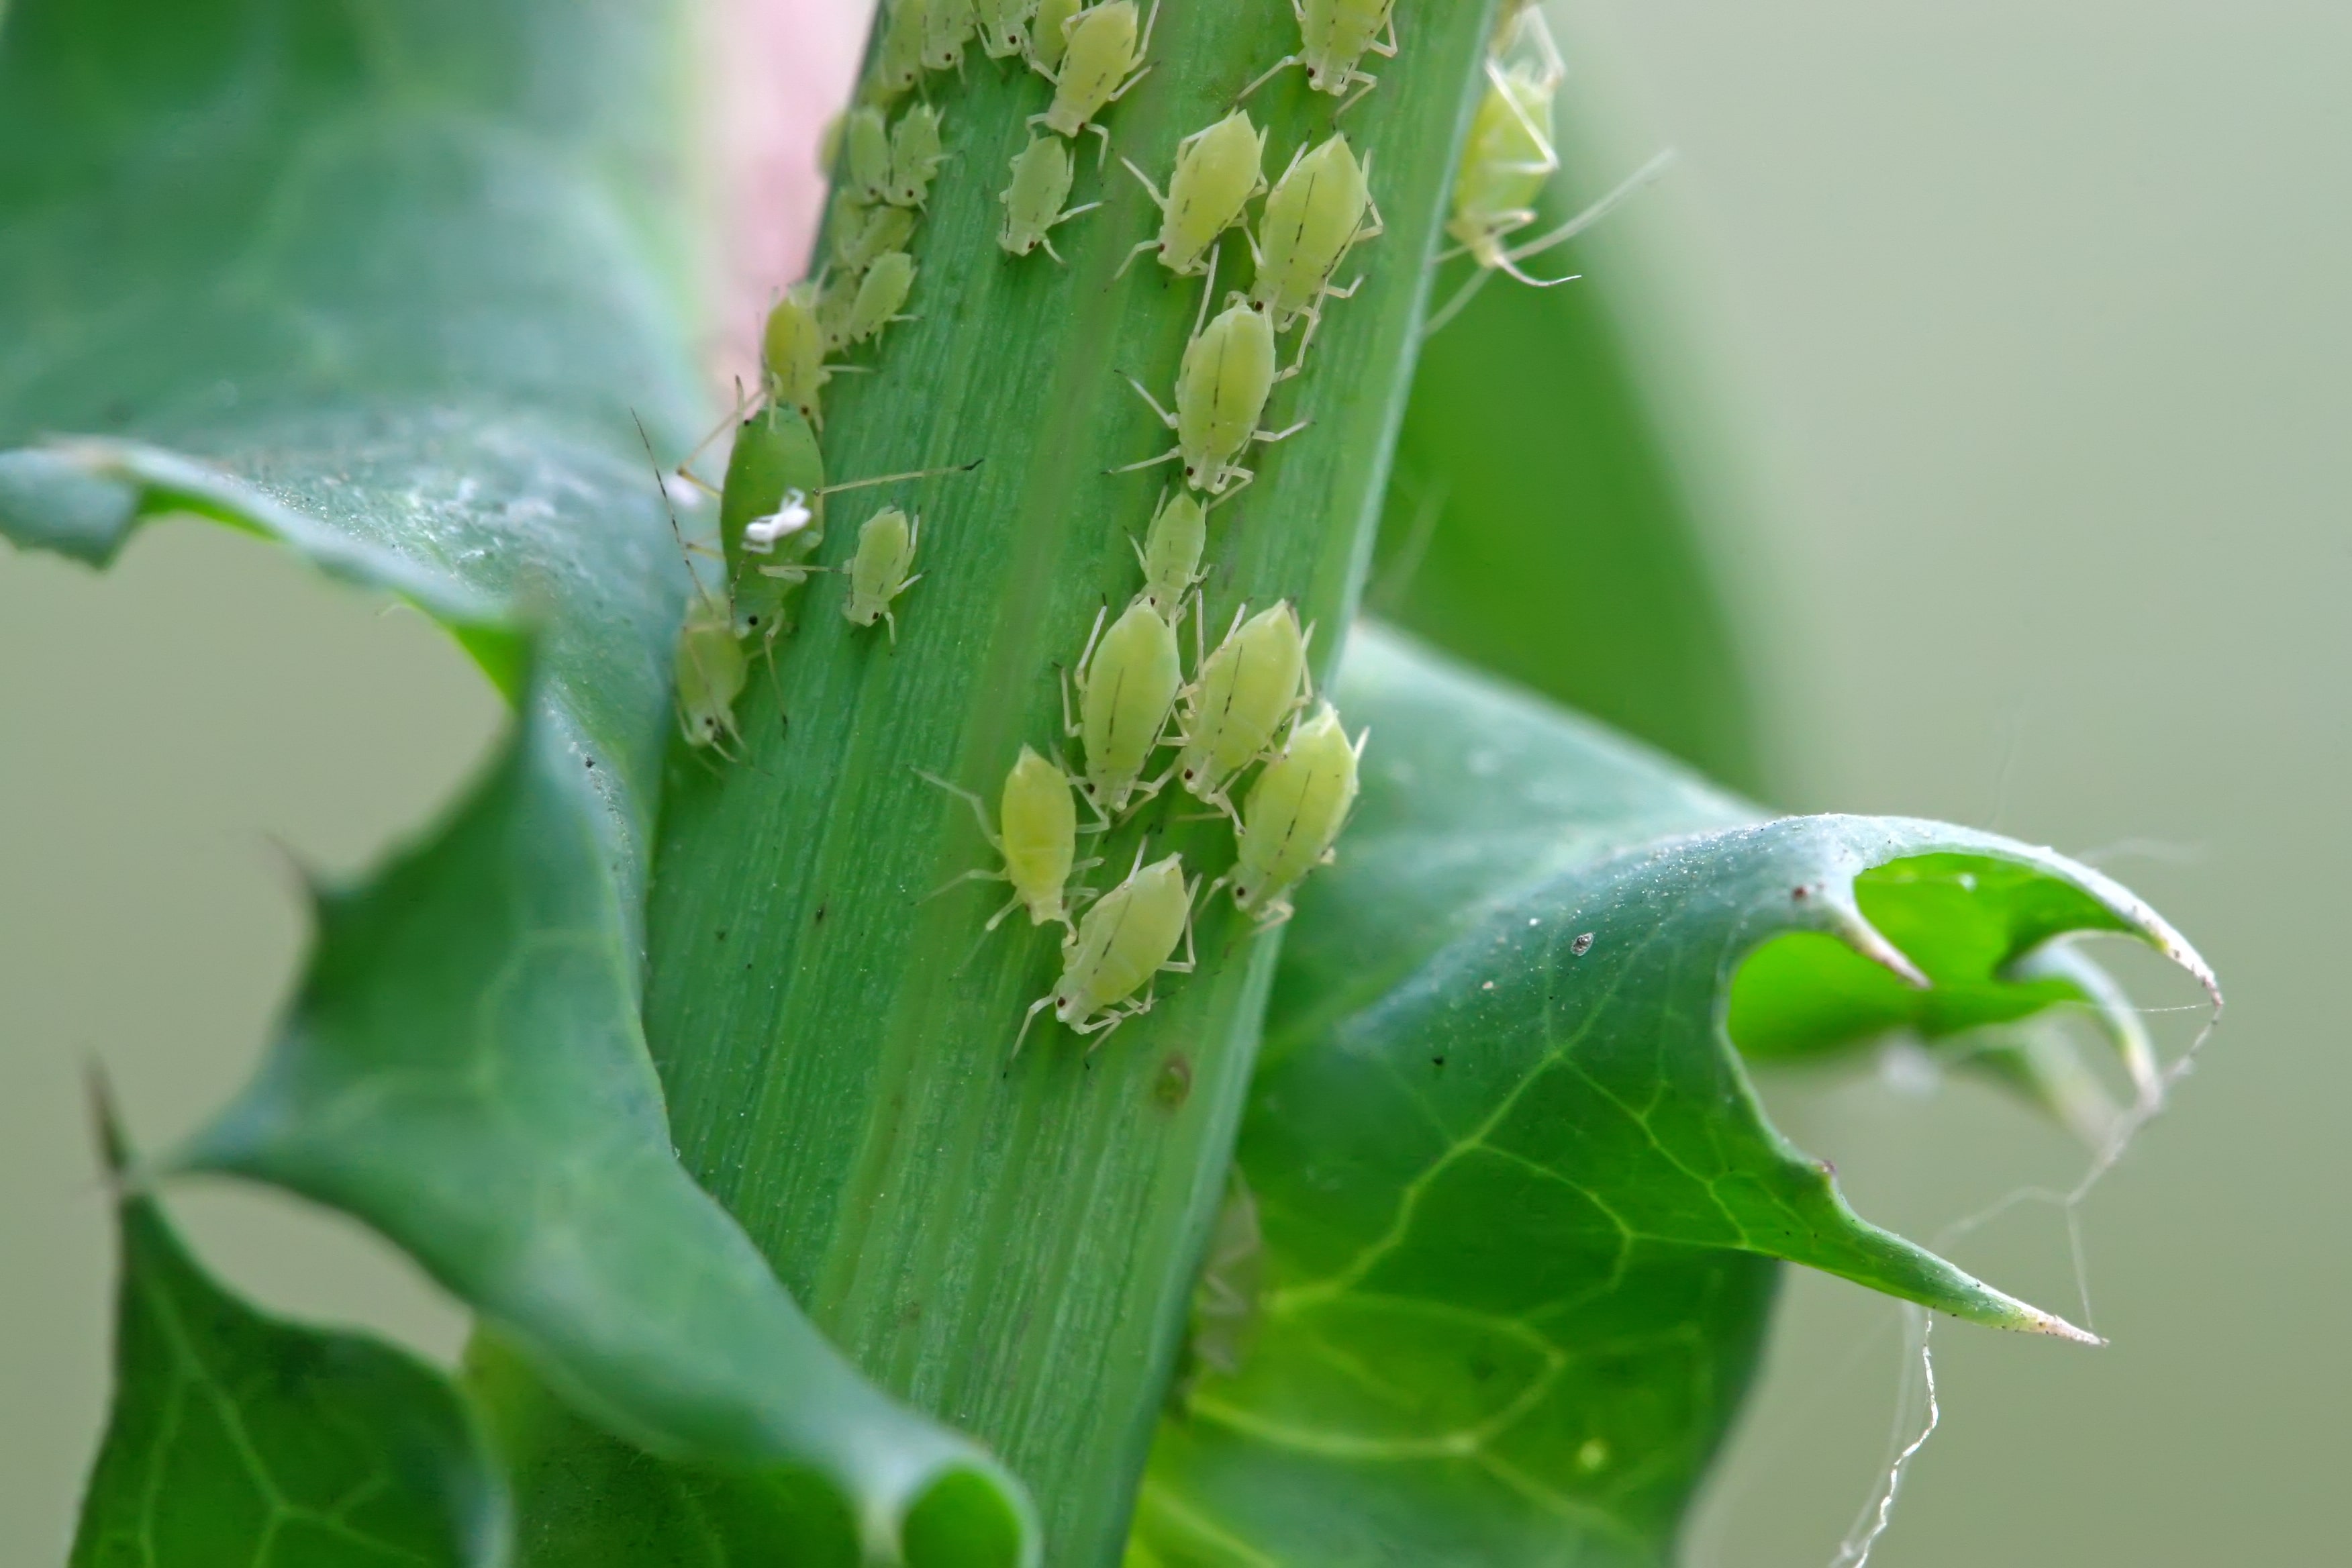 Aphids on leaf